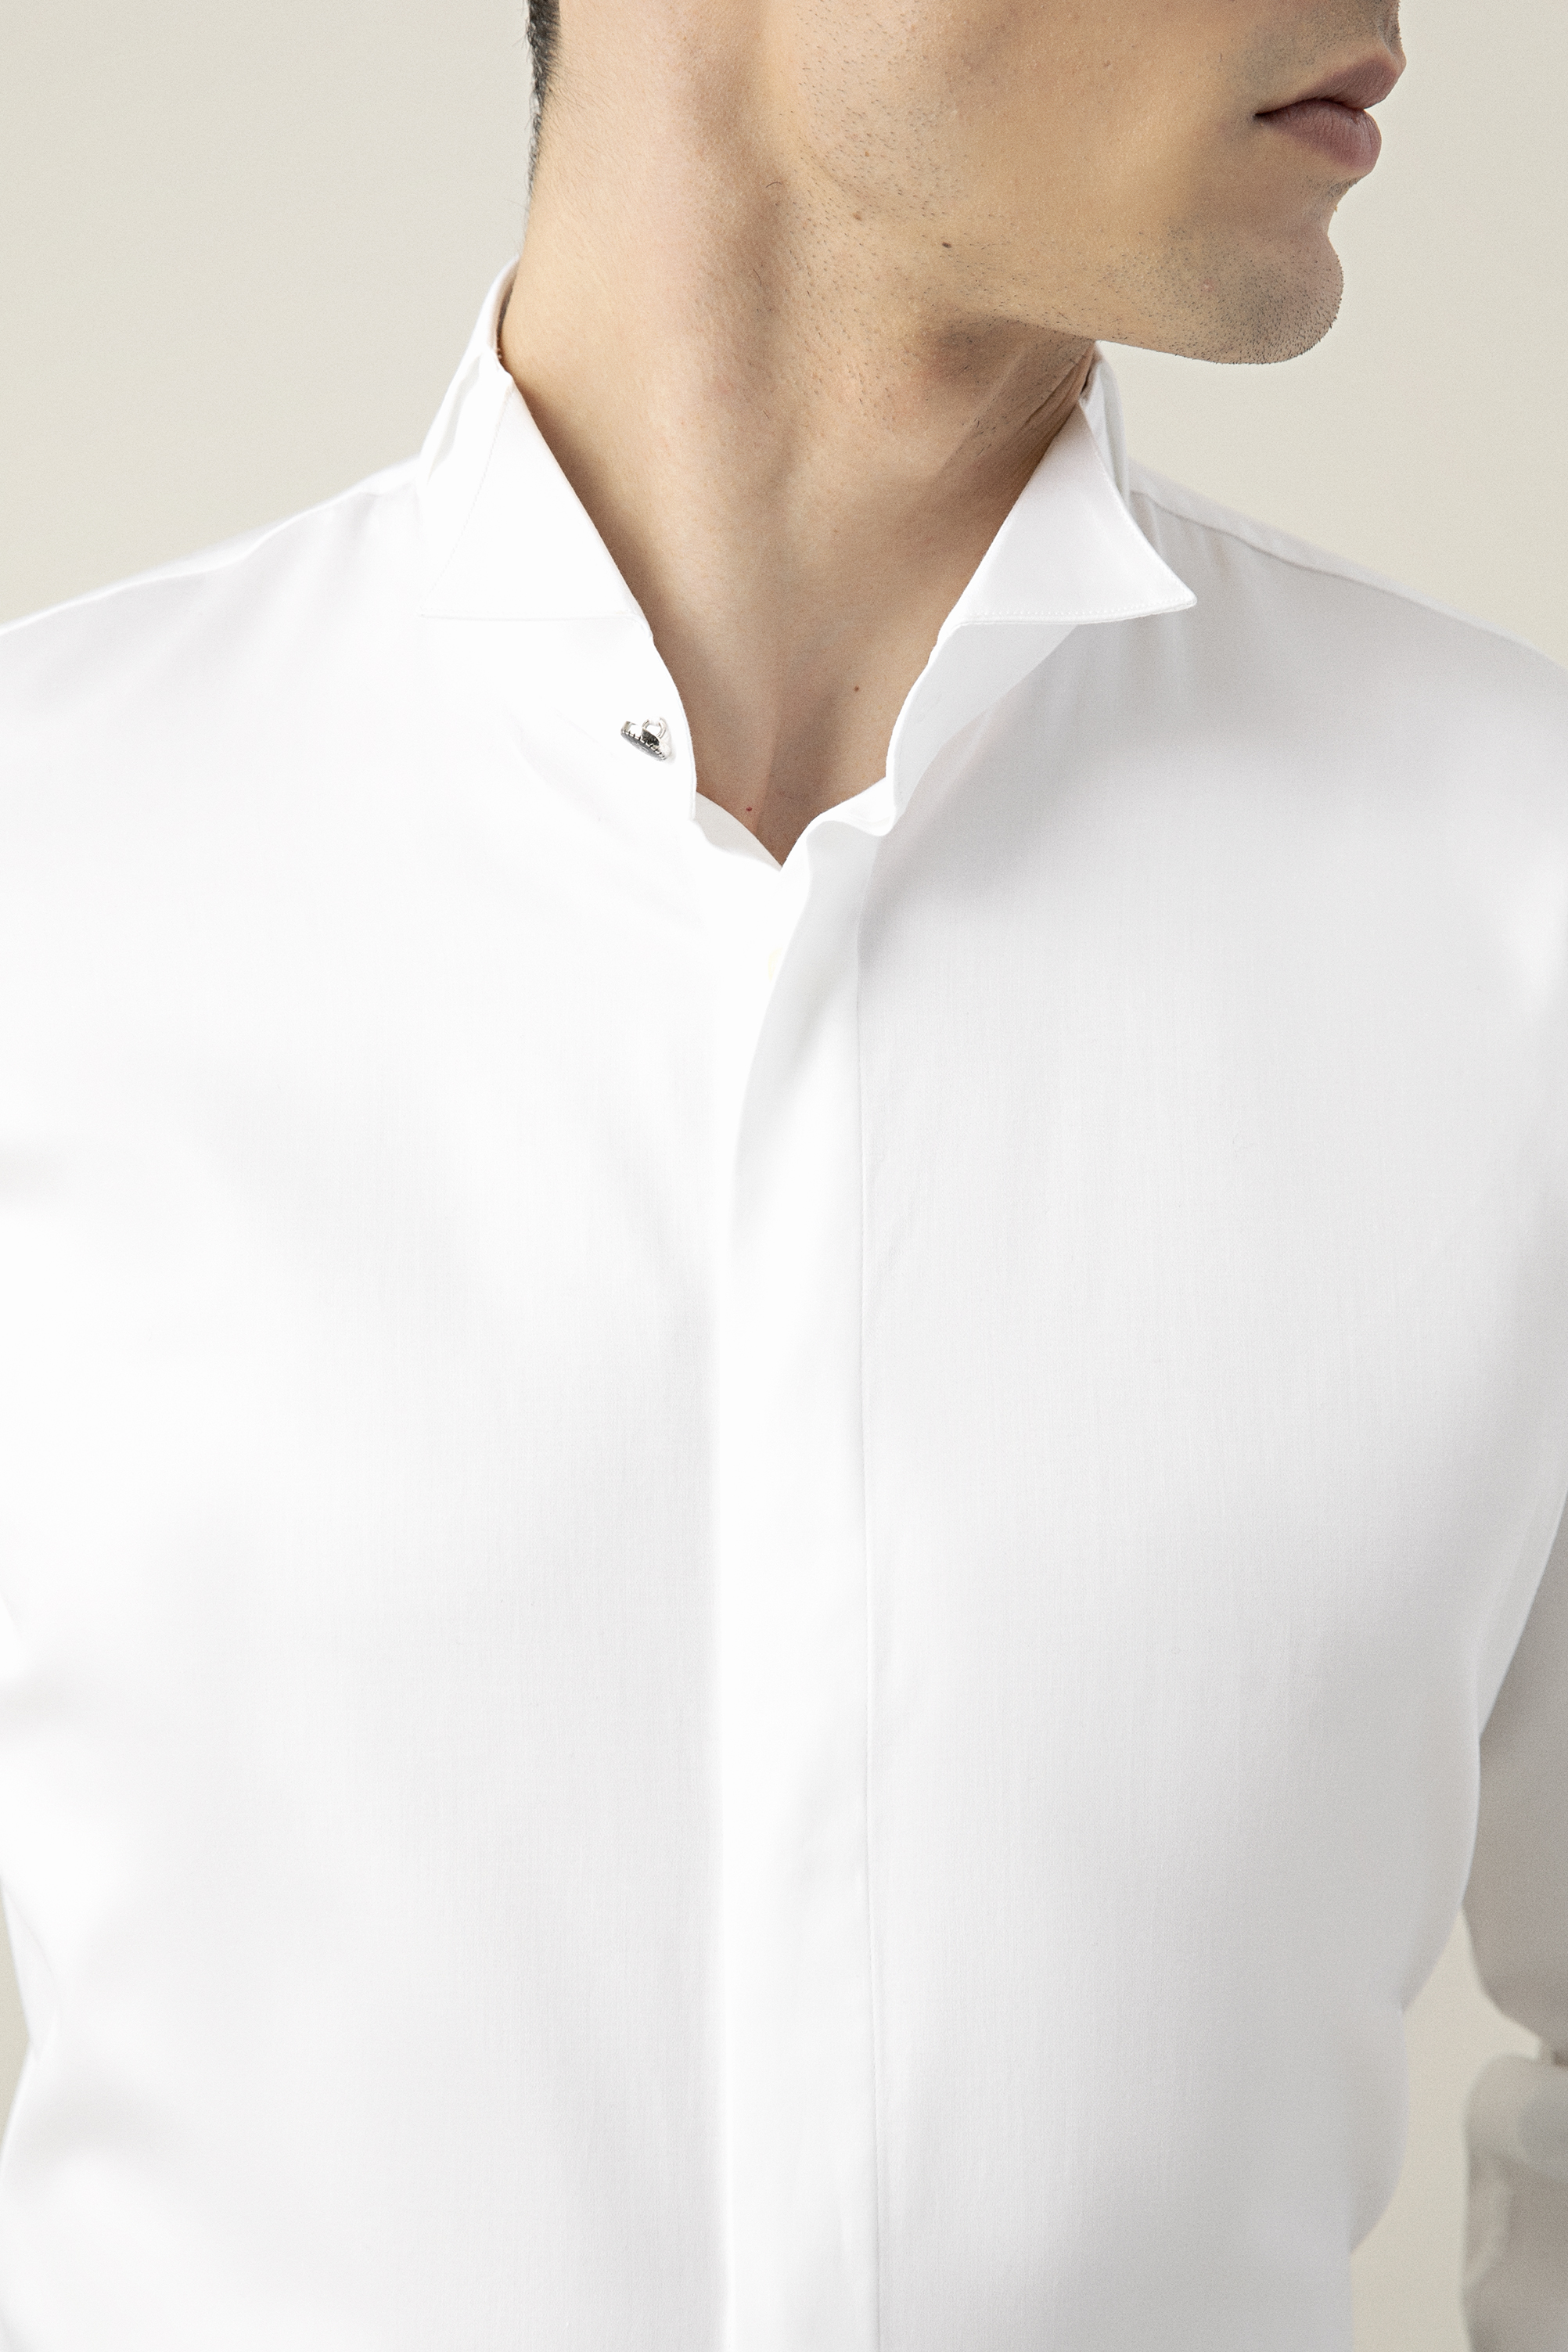 Damat Tween Damat Slim Fit Beyaz Düz Smokin Gömlek. 1